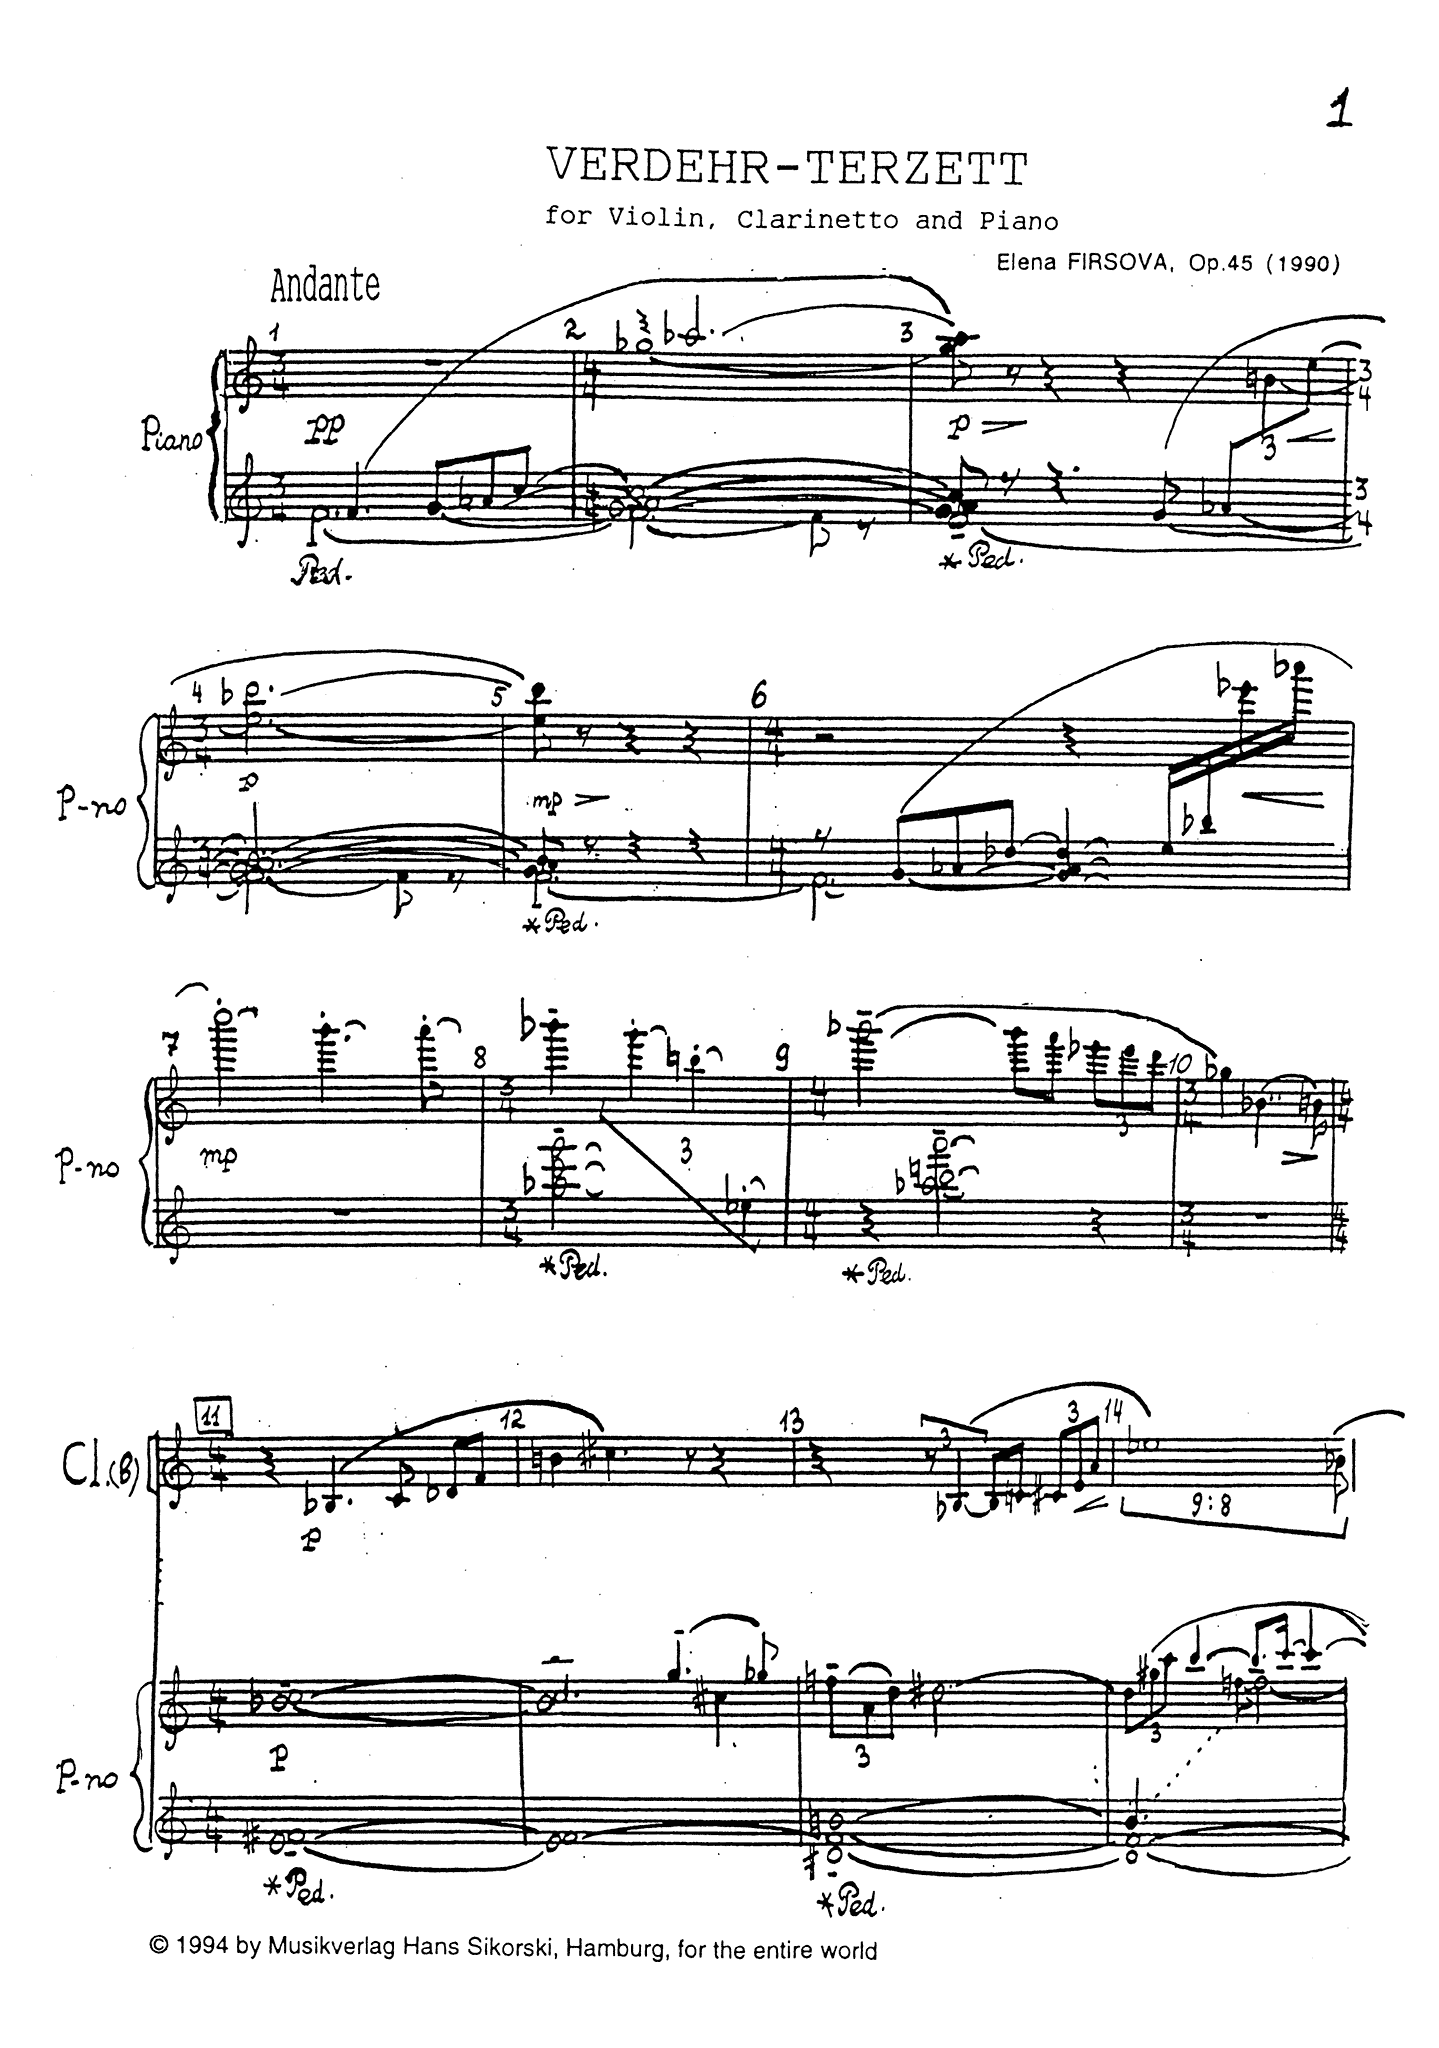 Firsova Verdehr-Trio, Op. 45 clarinet violin and piano score